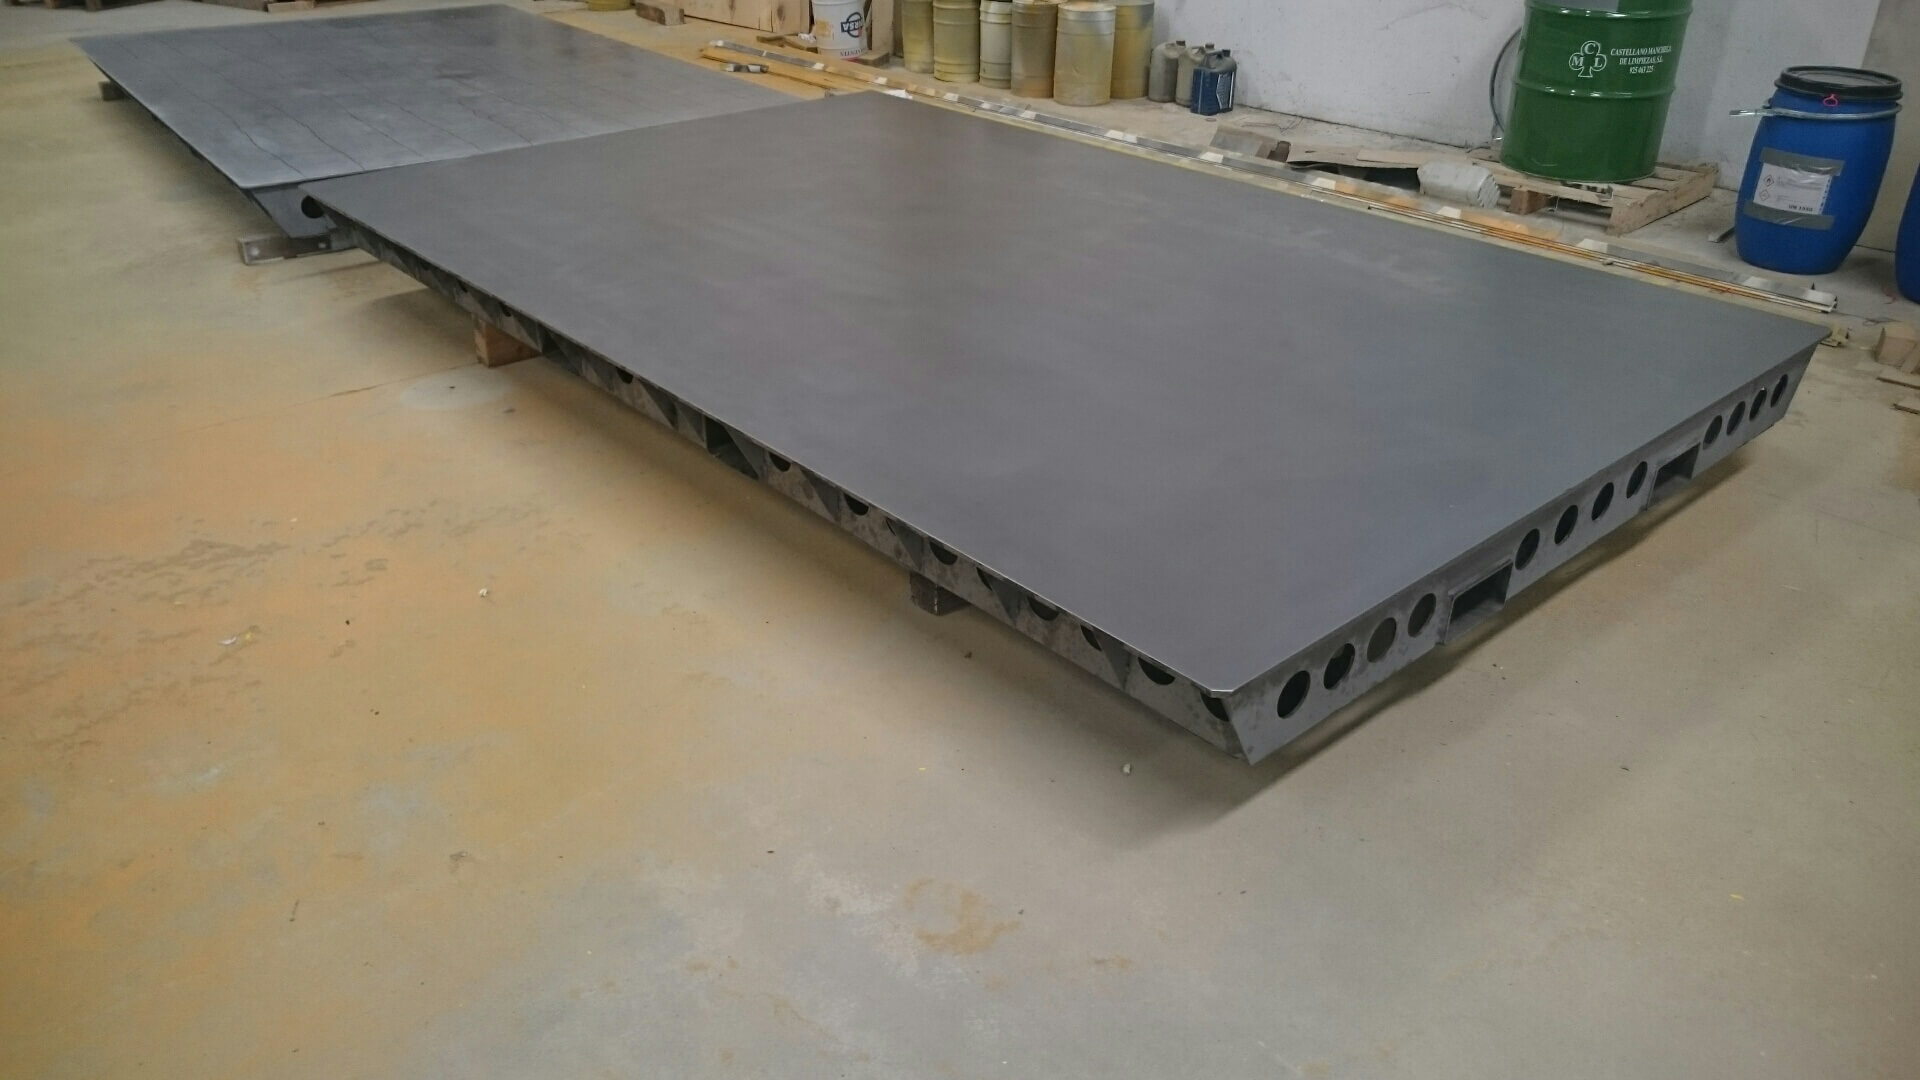 DSC 2825 - Large flat tables